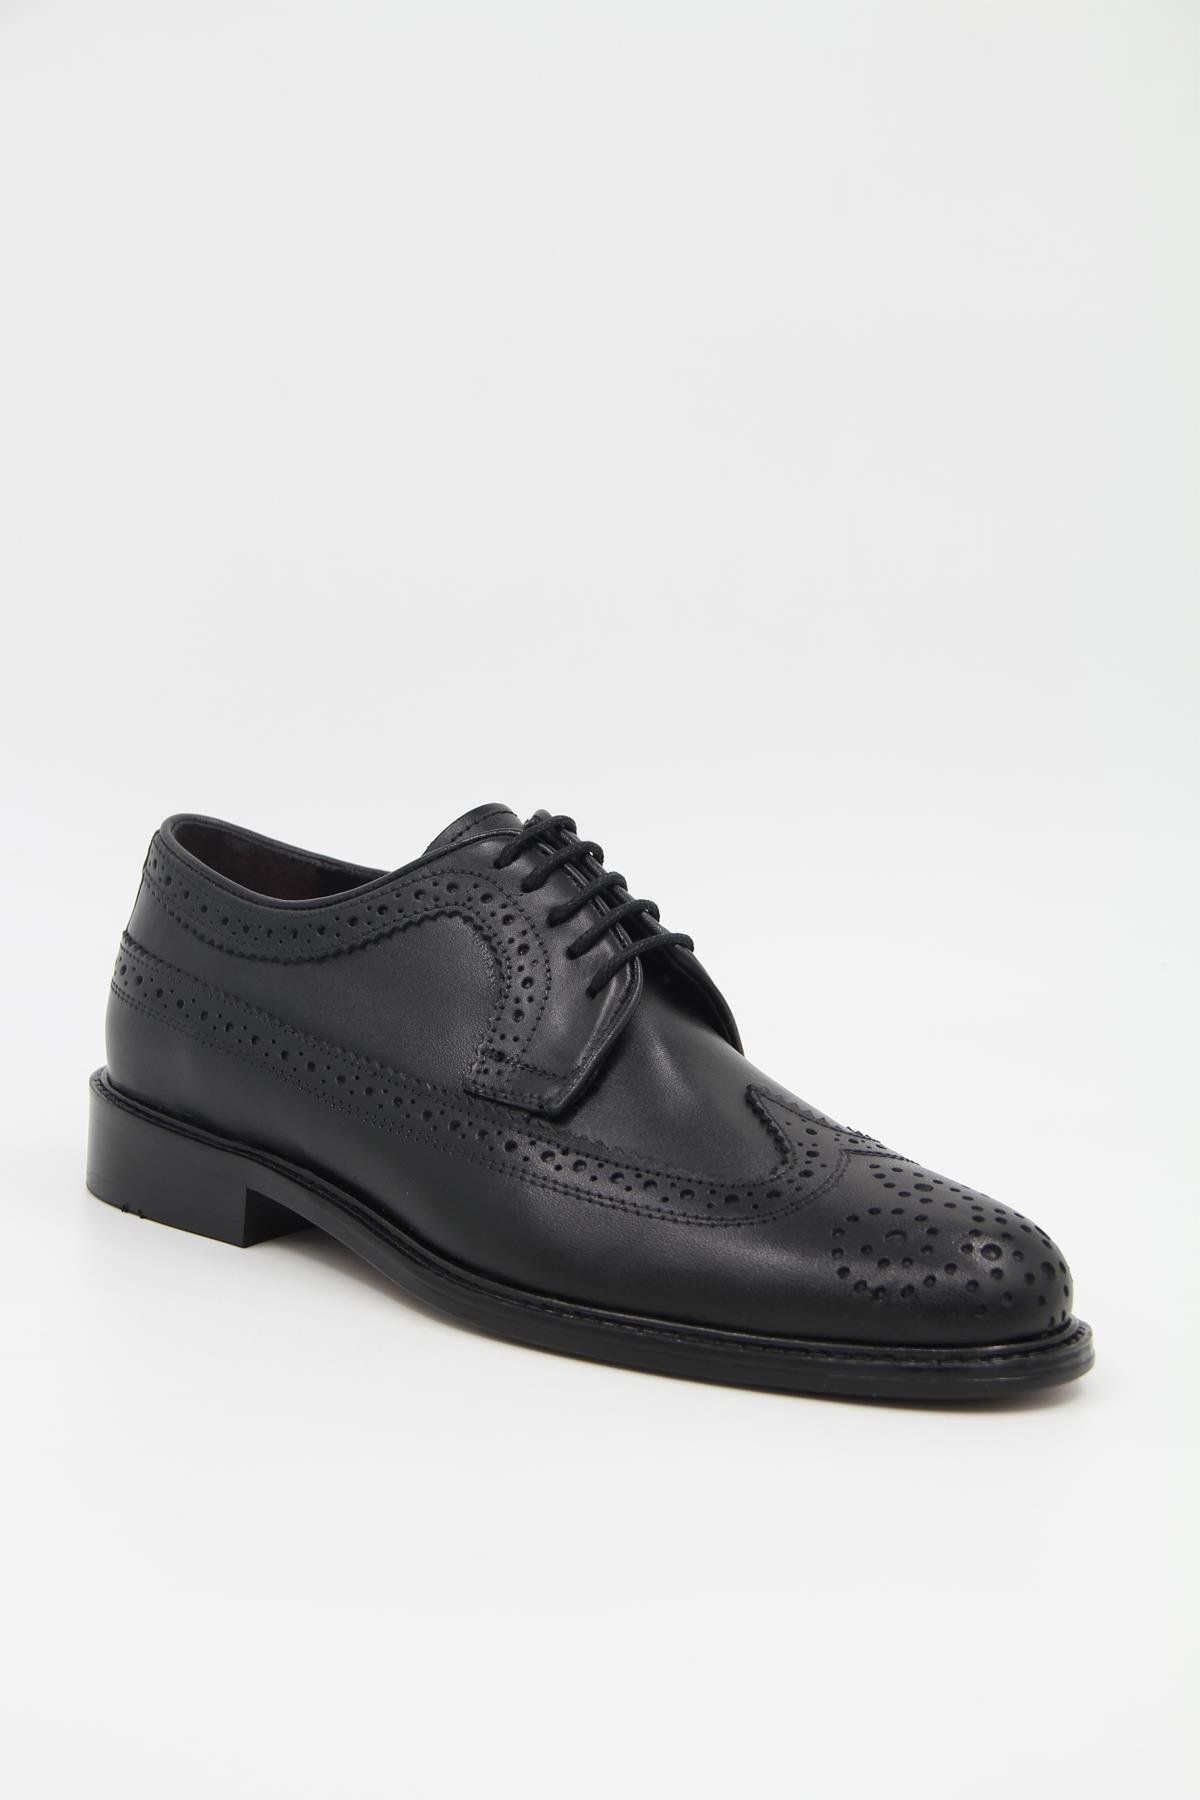 DANACI Danacı 906 Erkek Klasik Ayakkabı - Siyah